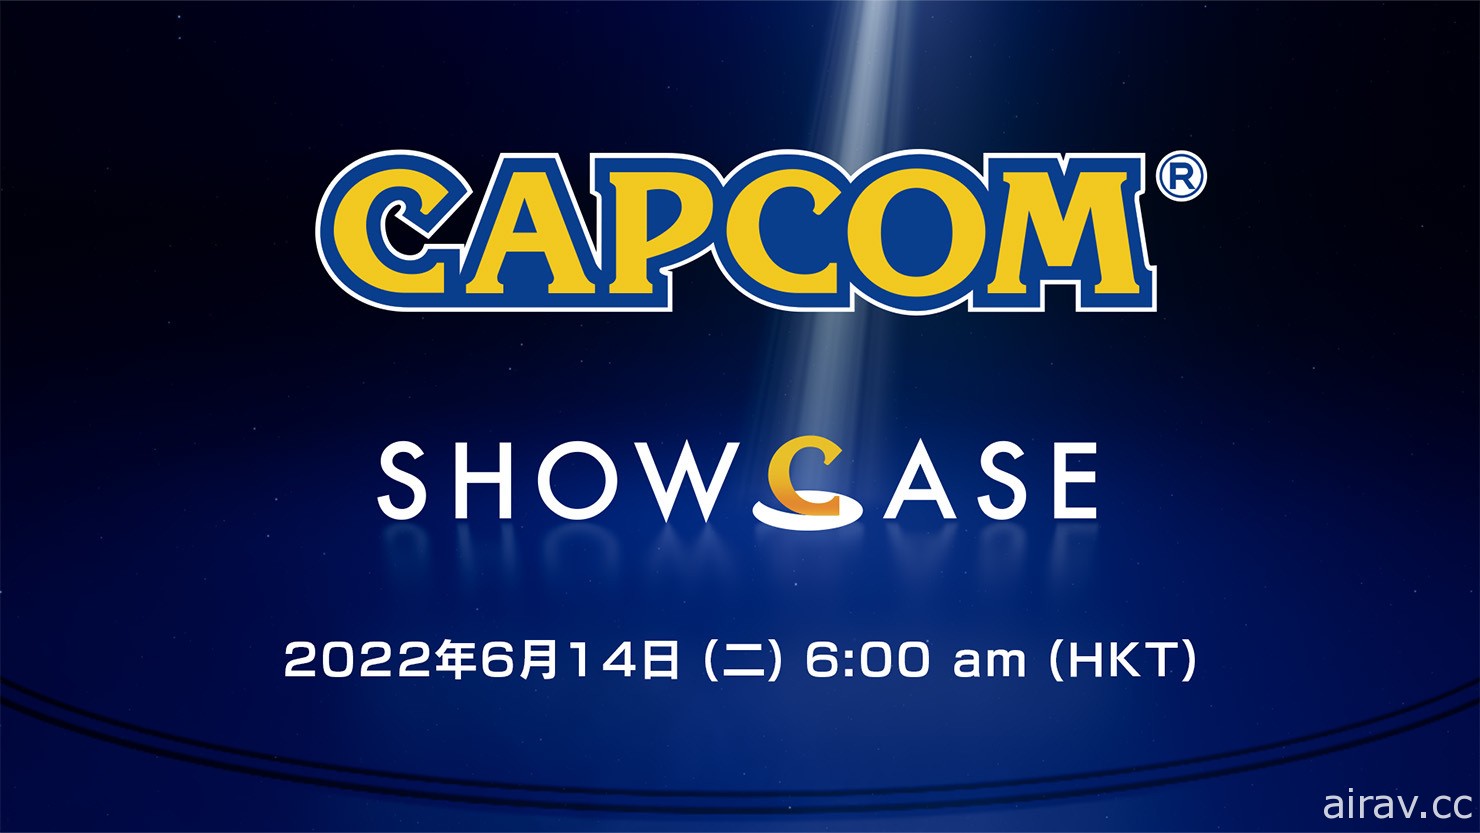 線上節目 Capcom Showcase 將於 6 月 14 日播出 帶來作品最新資訊